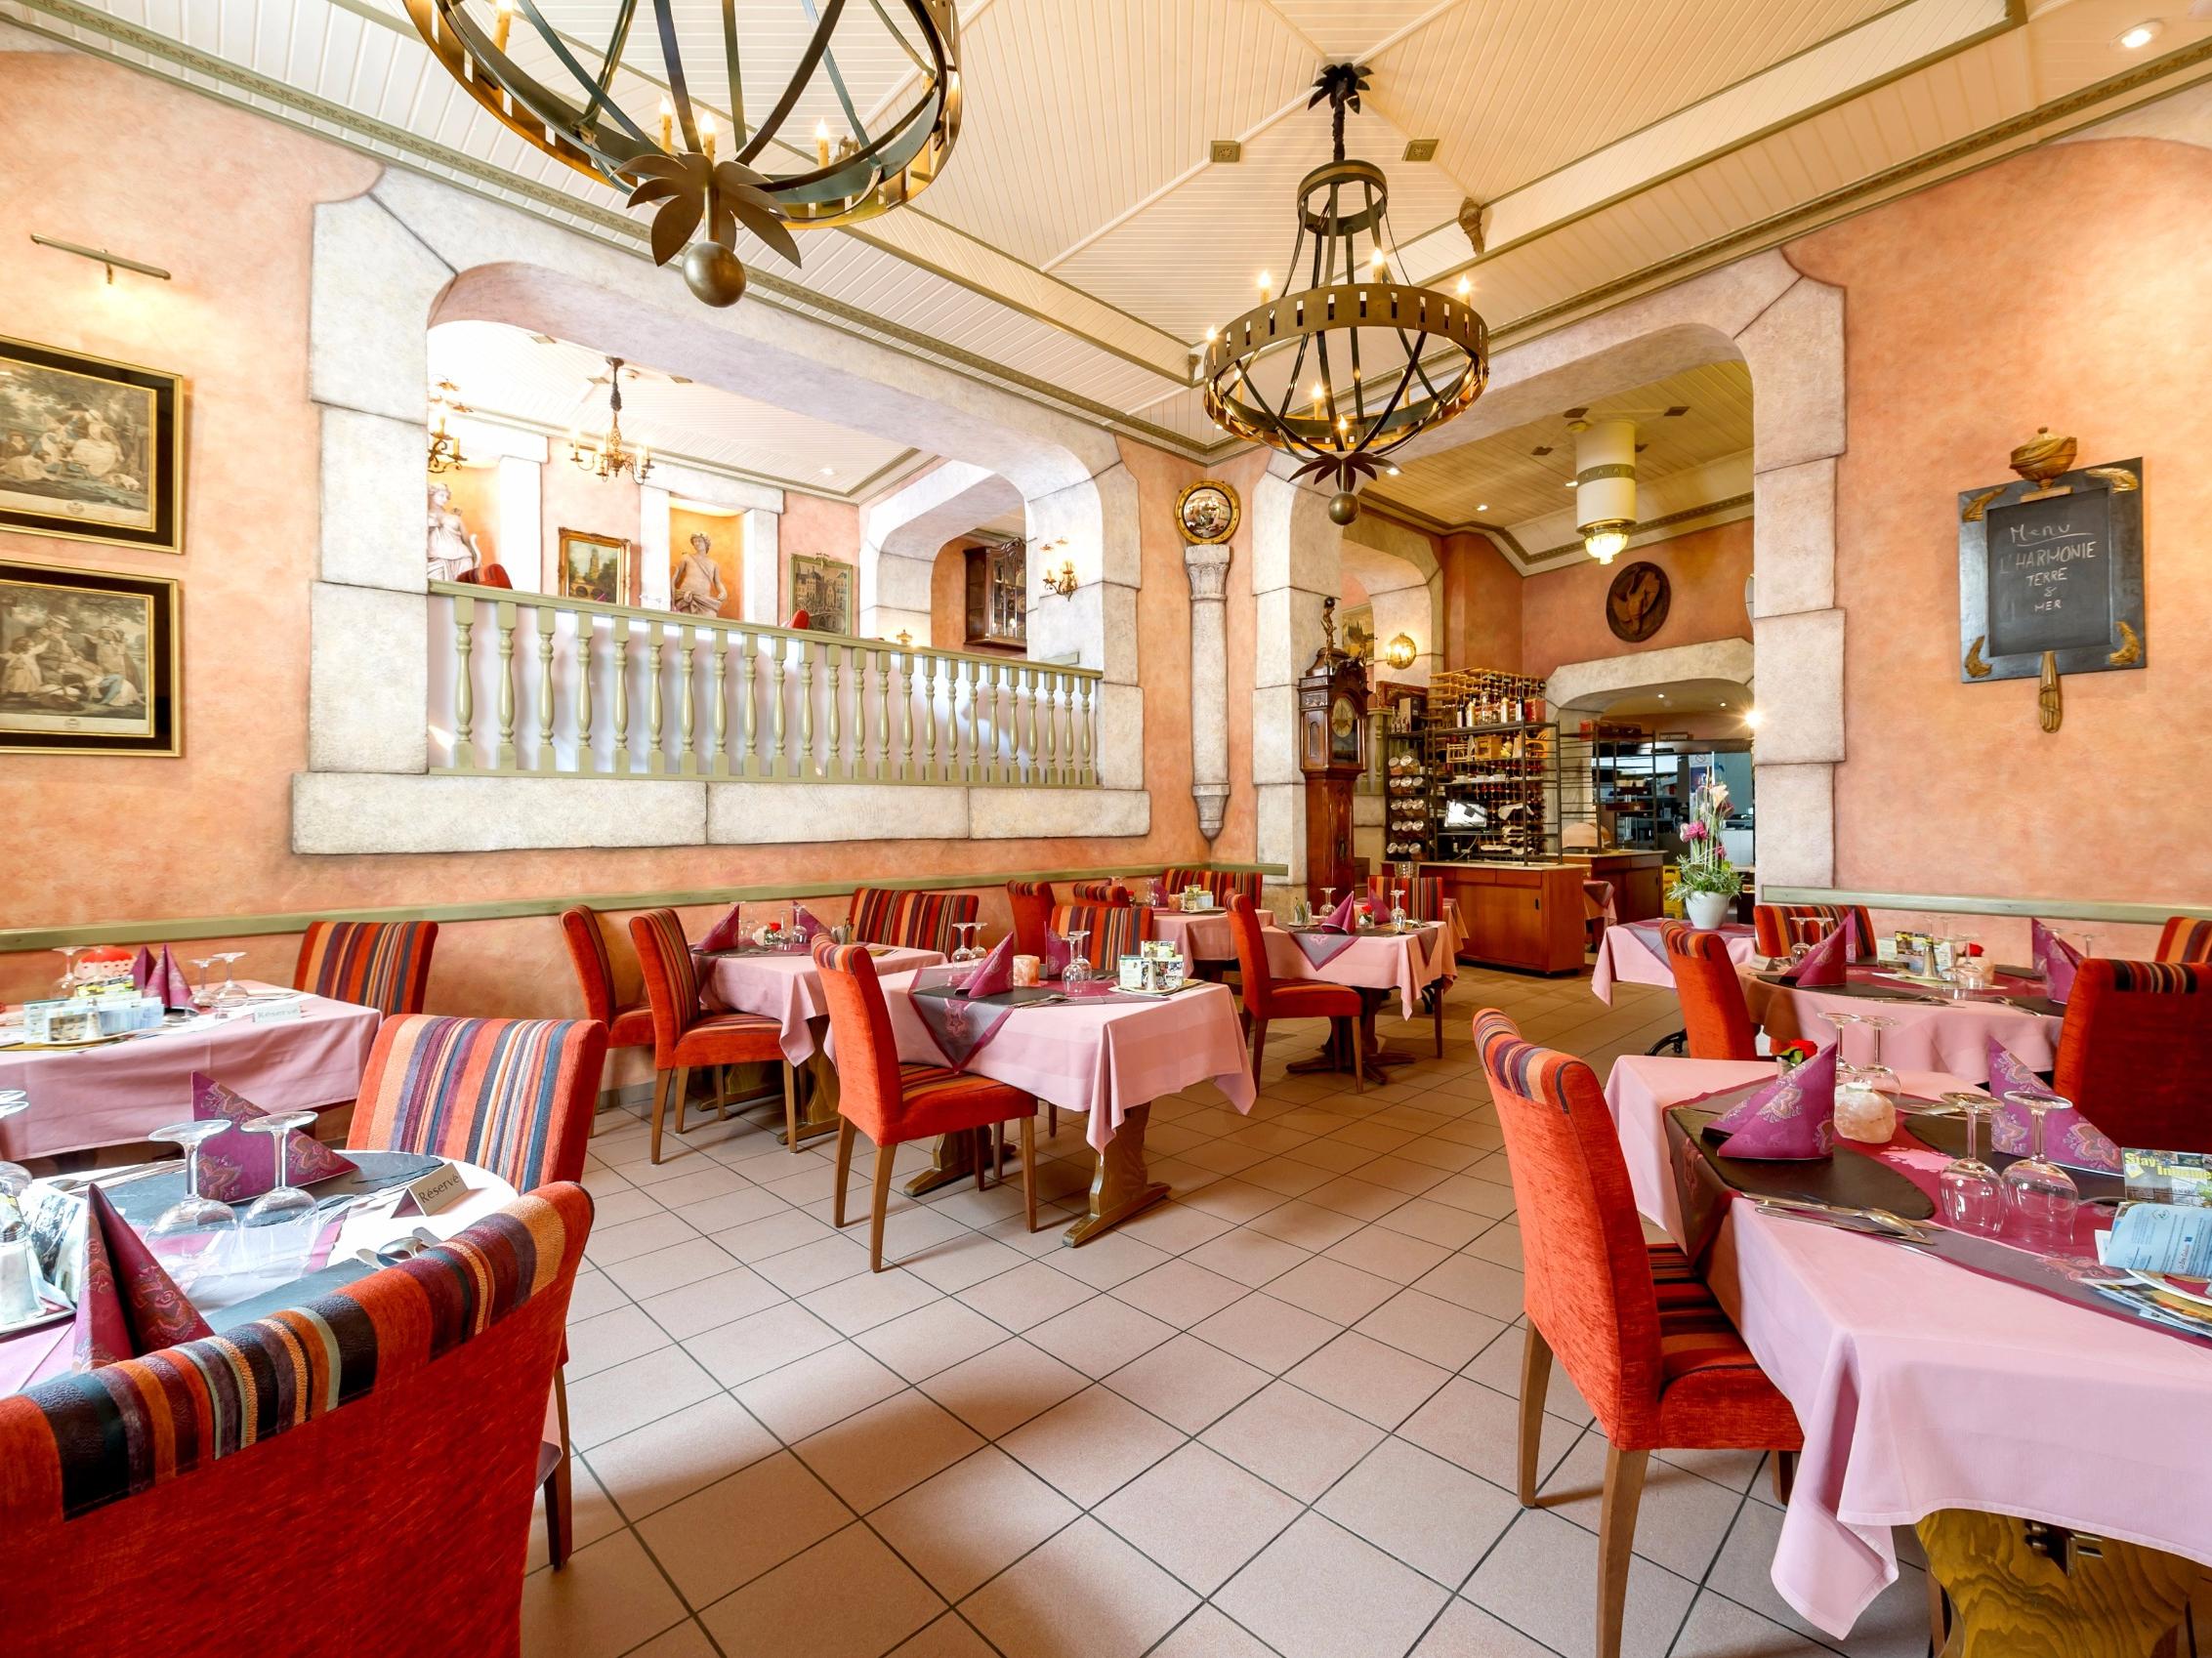 Logis Gourmet & Relax Hotel de la Sure Rest. Comte Godefroy